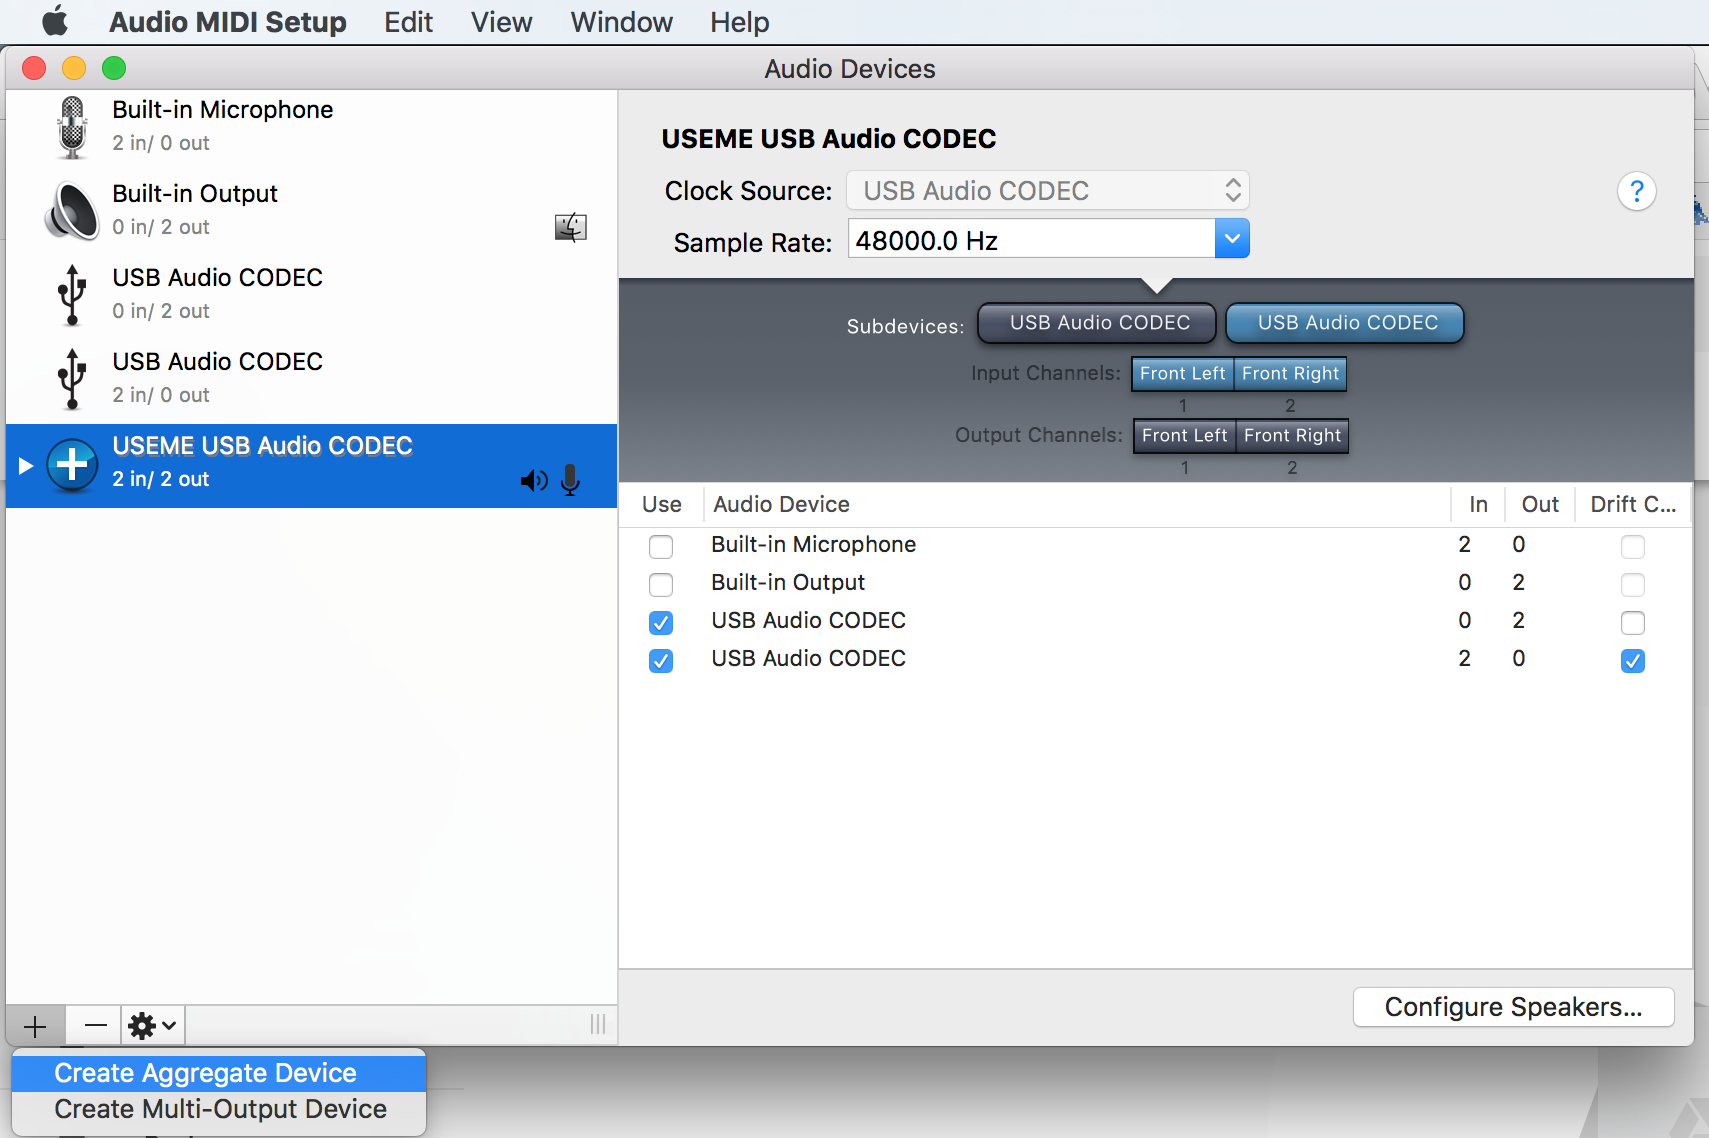 Audio Midi Setup - create aggregate device